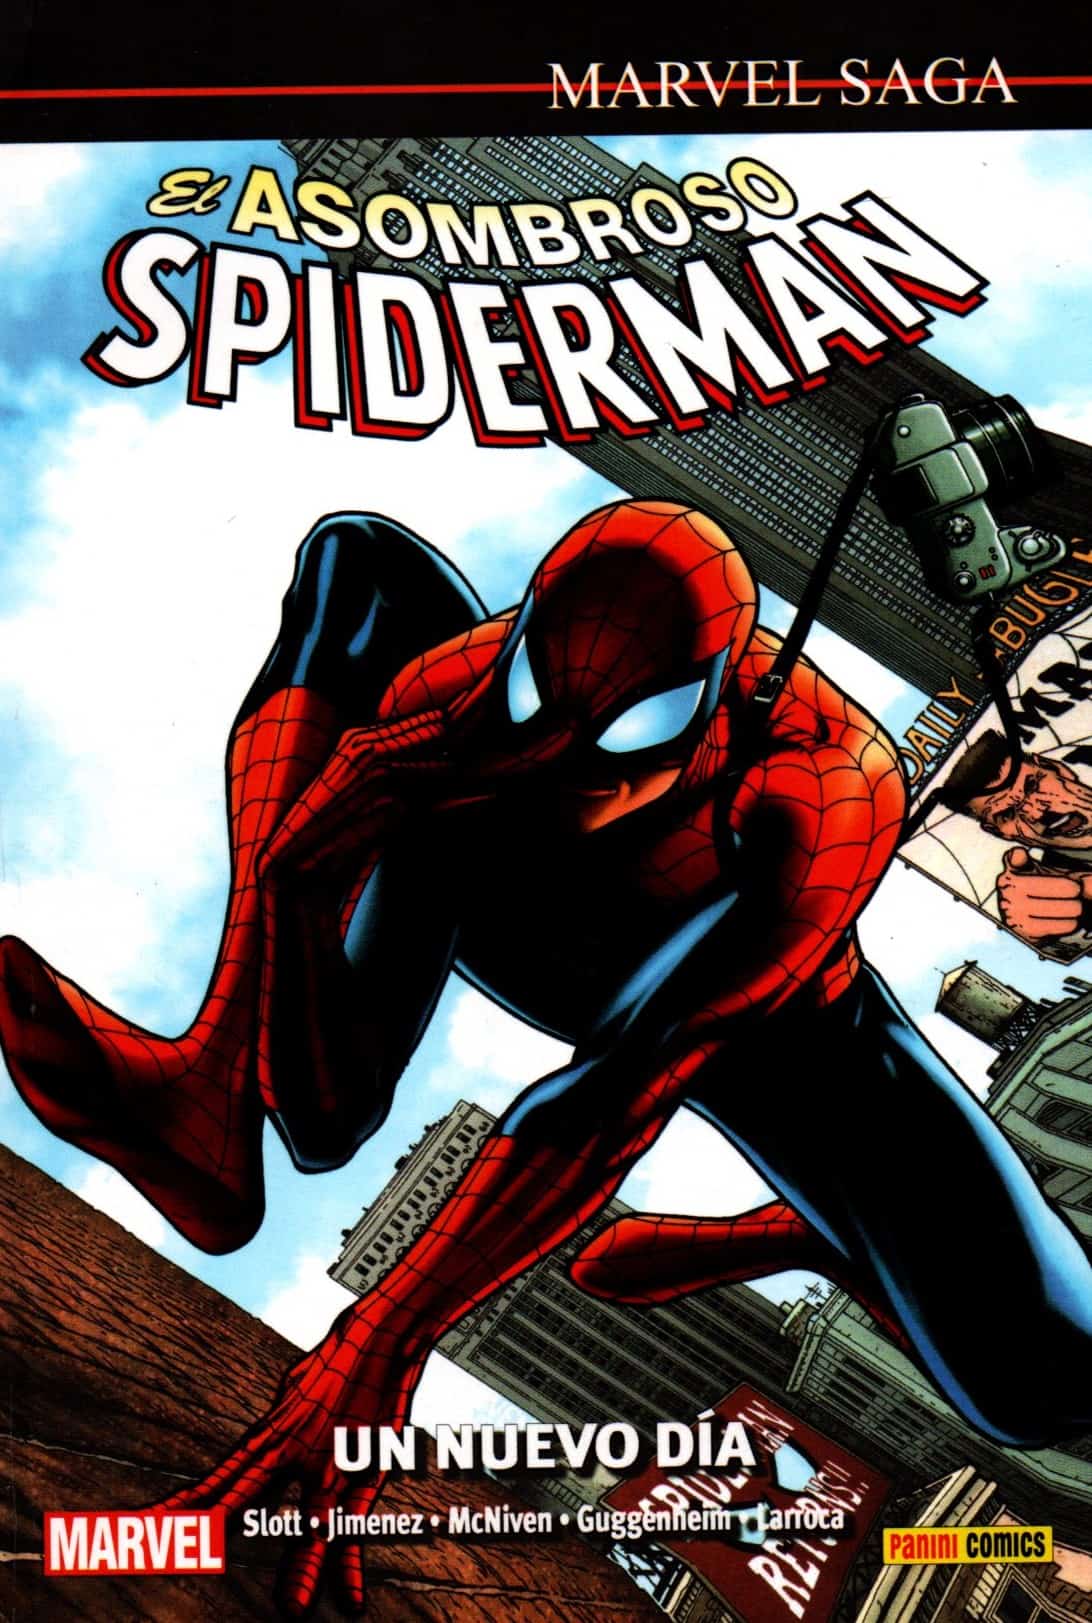 CSM8 comic spiderman un nuevo dia